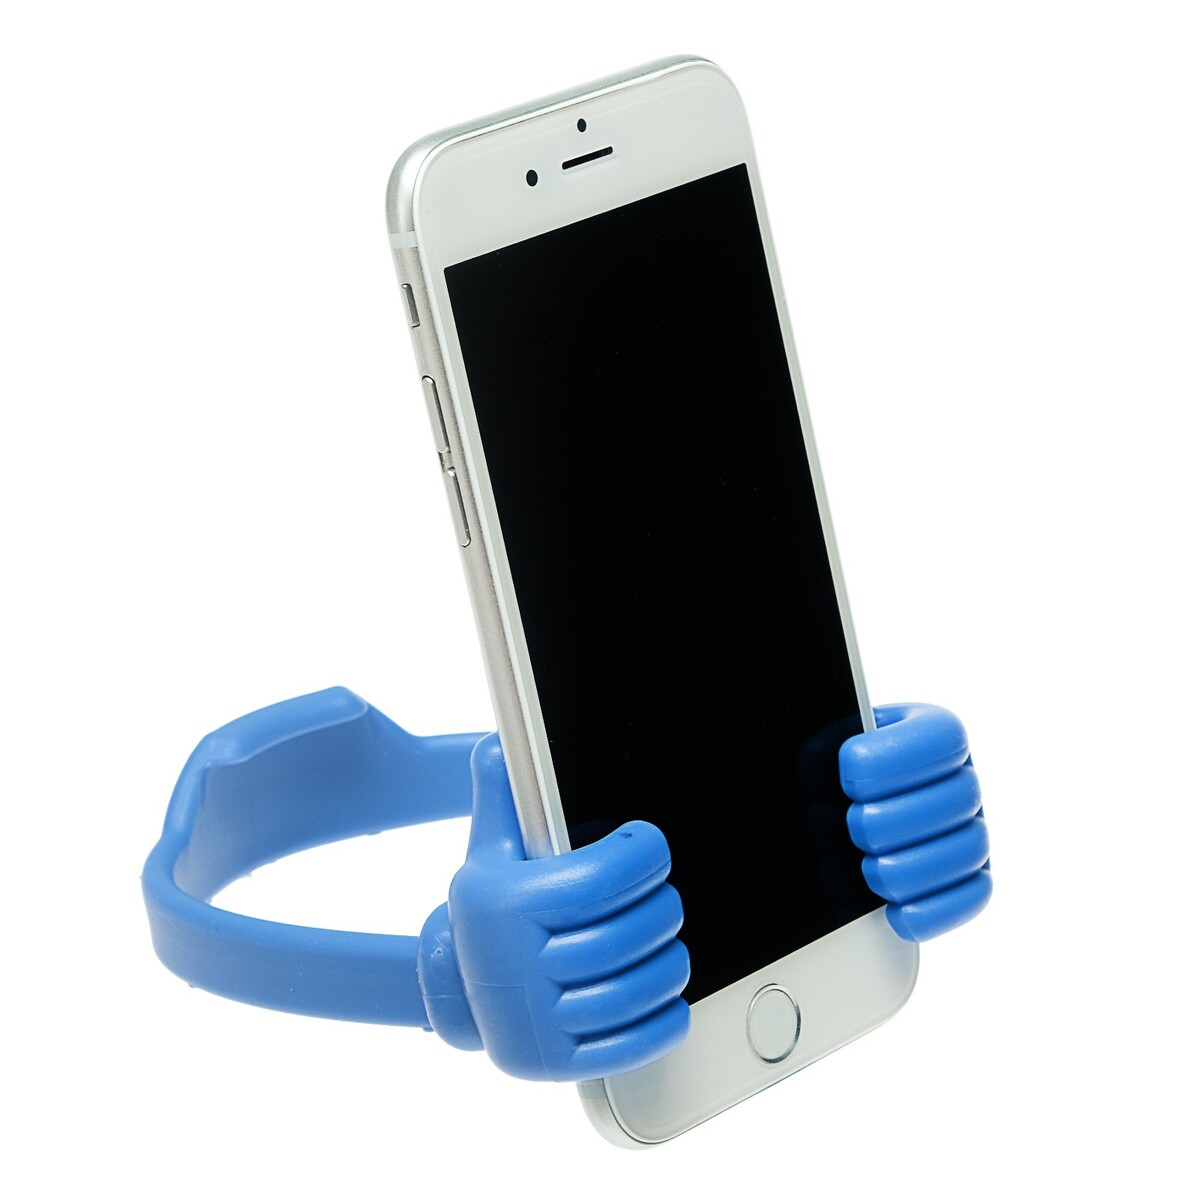 Подставка для телефона luazon, в форме рук, регулируемая ширина, синяя сушилка для обуви luazon lso 13 17 см 12 вт индикатор синяя